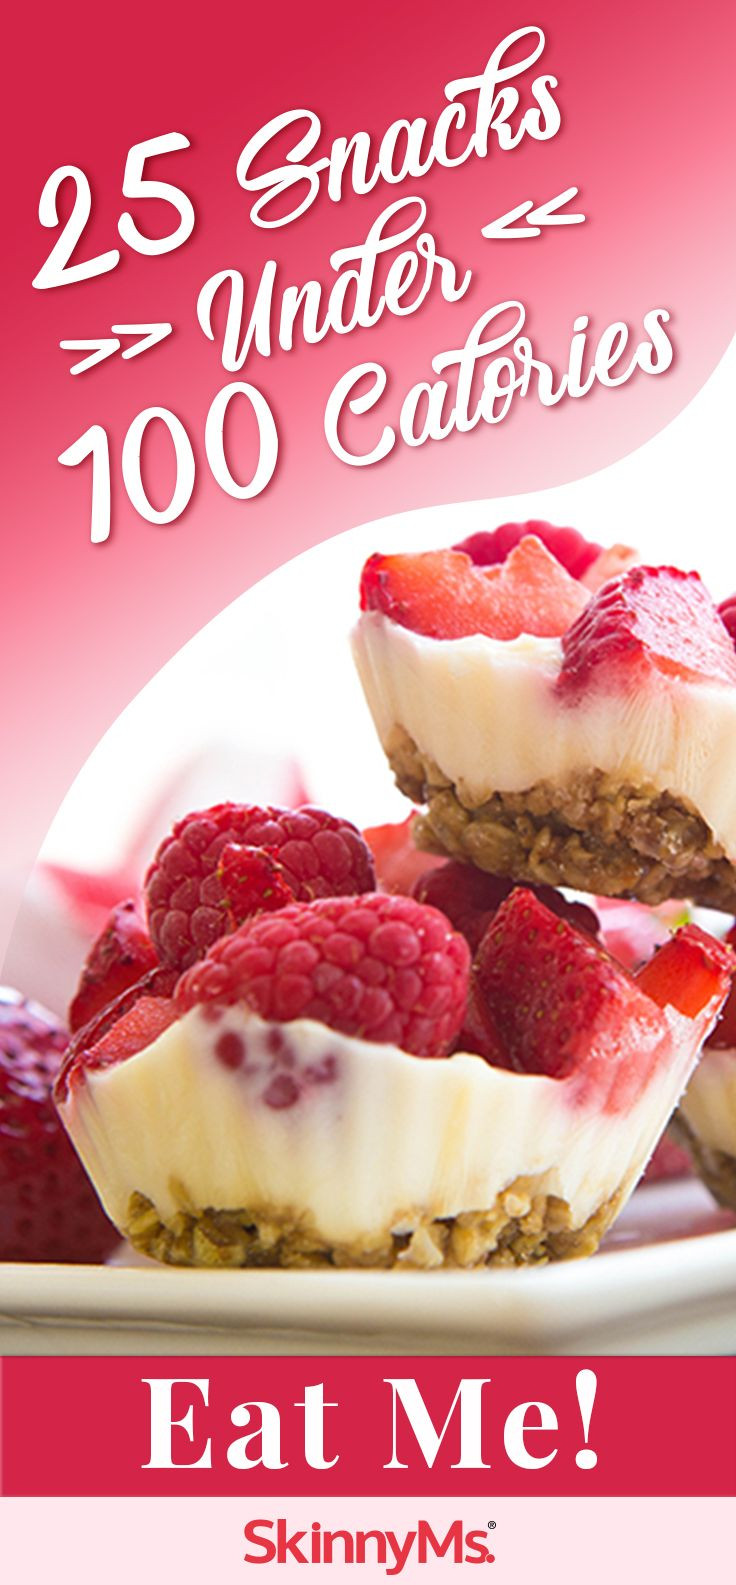 Low Calorie Desserts Under 100 Calories
 25 Snacks Under 100 Calories